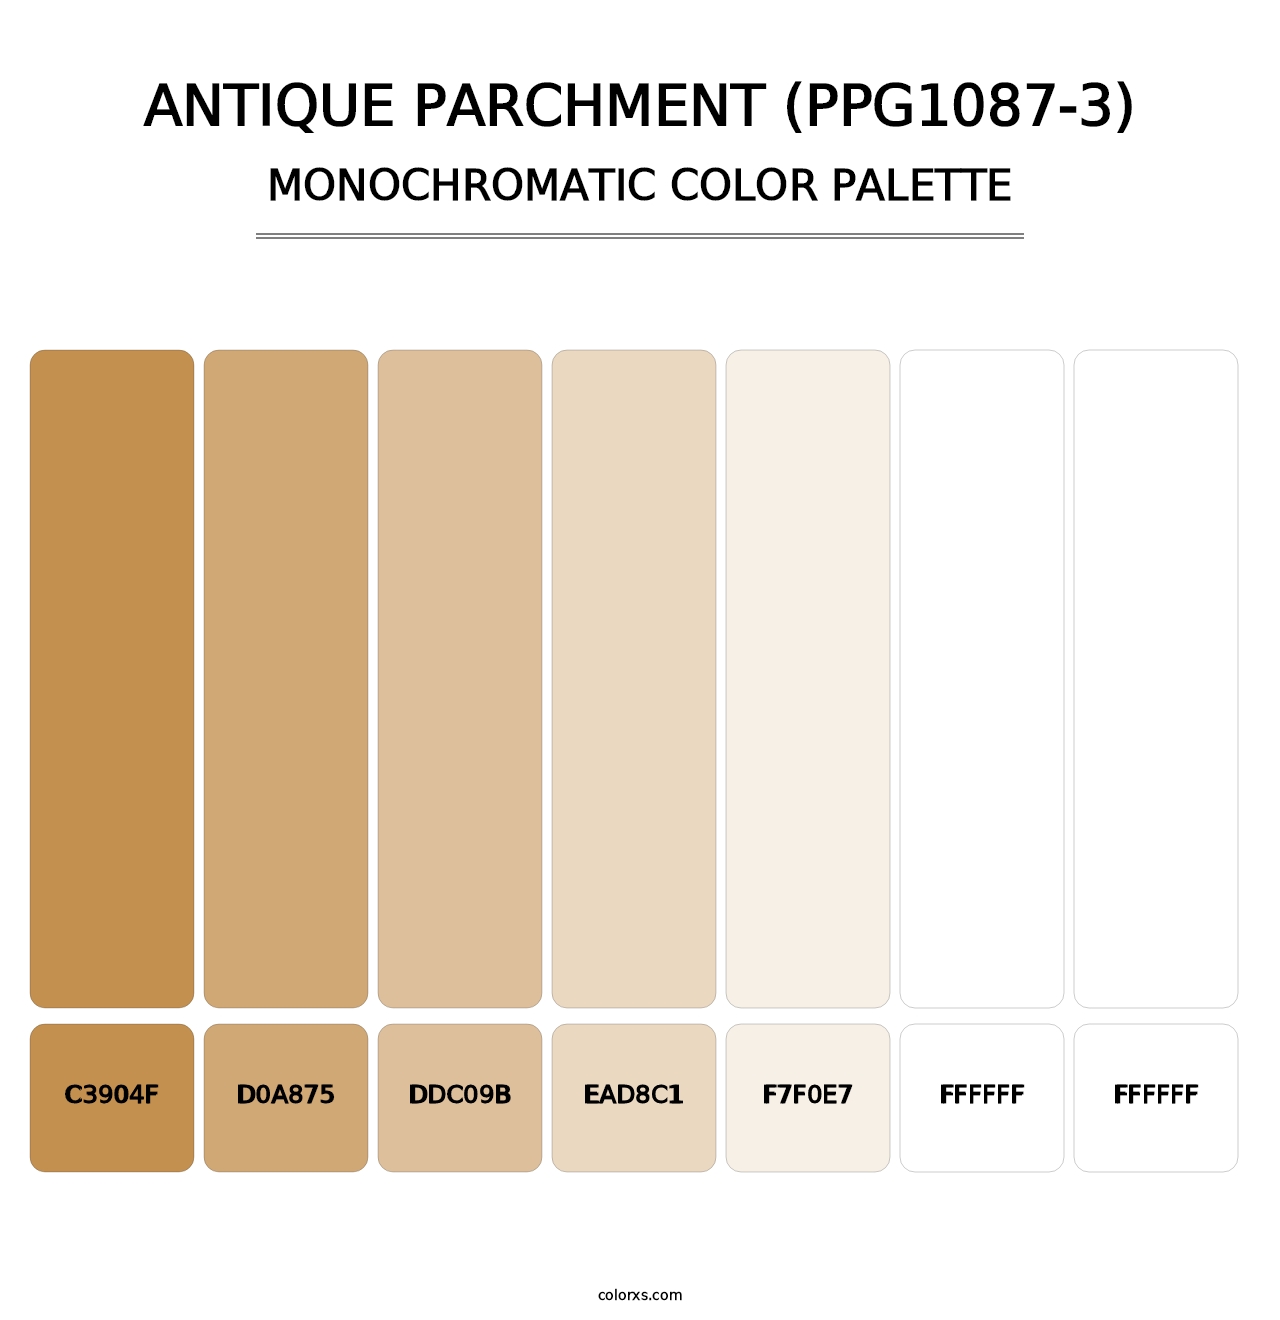 Antique Parchment (PPG1087-3) - Monochromatic Color Palette